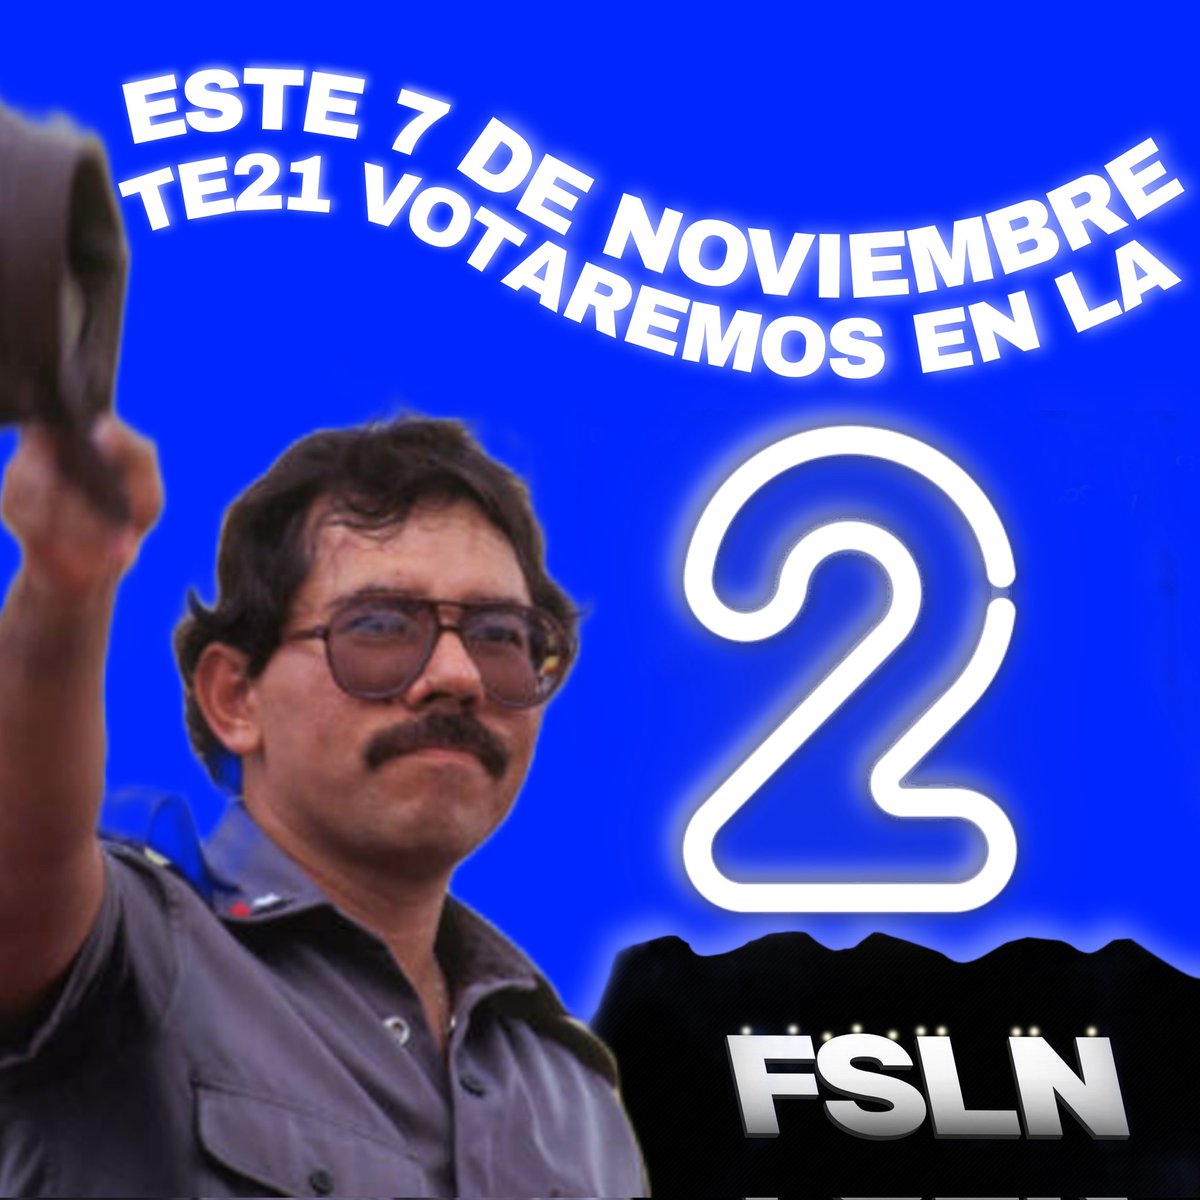 #UnidadParaLaProsperidad
#TodosJuntosVamosAdelante
#TE21 esté 7 vamos a votar en la casilla de to2...
Vos y yo somos 2
#Nicaragua
@TE2021 @TaniaPlomoFSLN @QueenMo1204 @ReynaMo05 @Uva22 @QuehacerN @Angeles_Nicas2